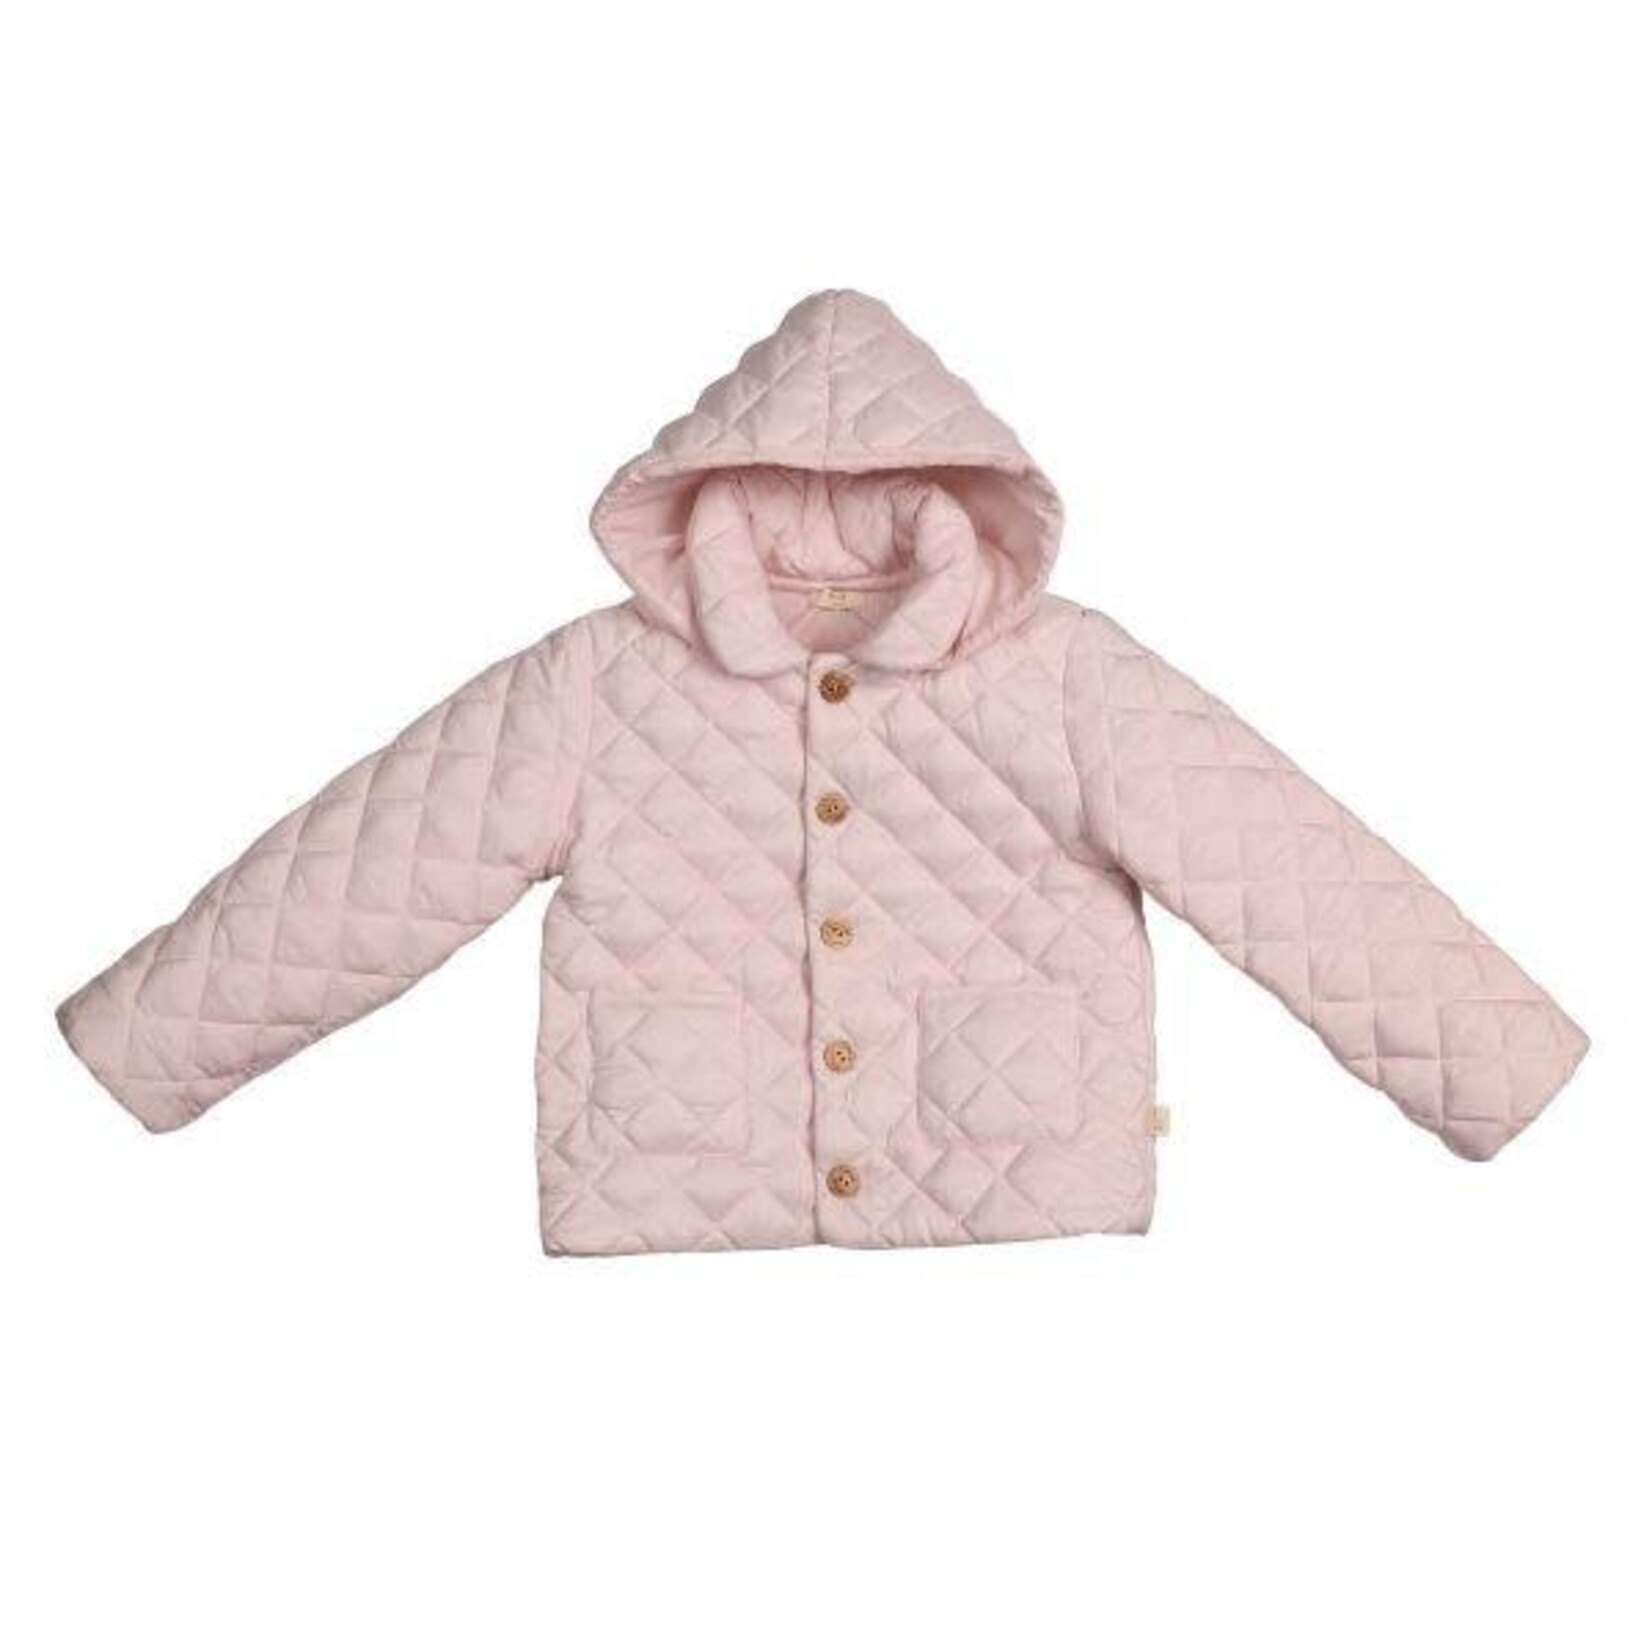 Baby Gi Baby Gi - Pink padded jacket - removable hood